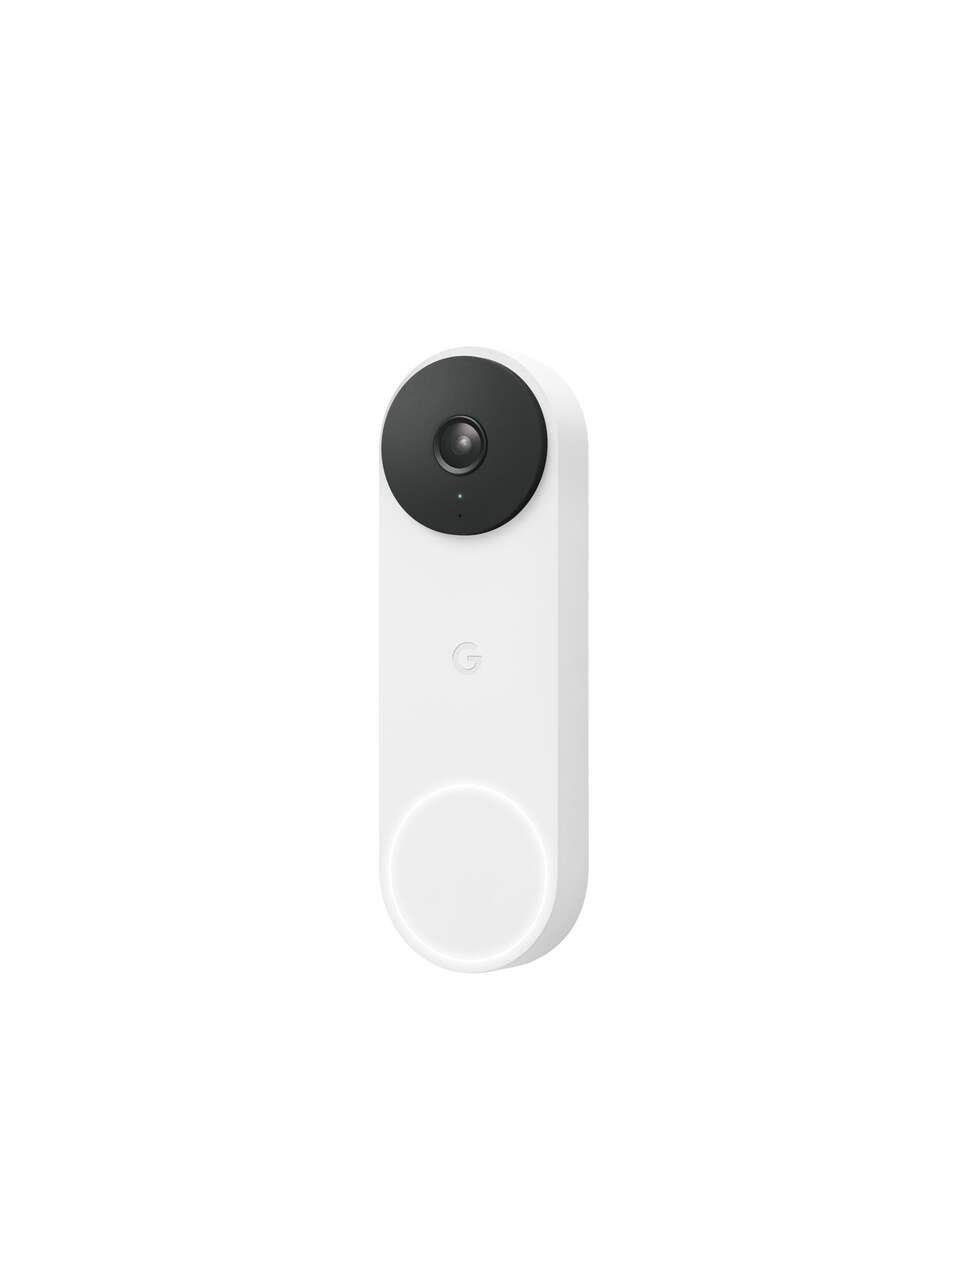 Wireless Video Doorbell - 2nd Gen